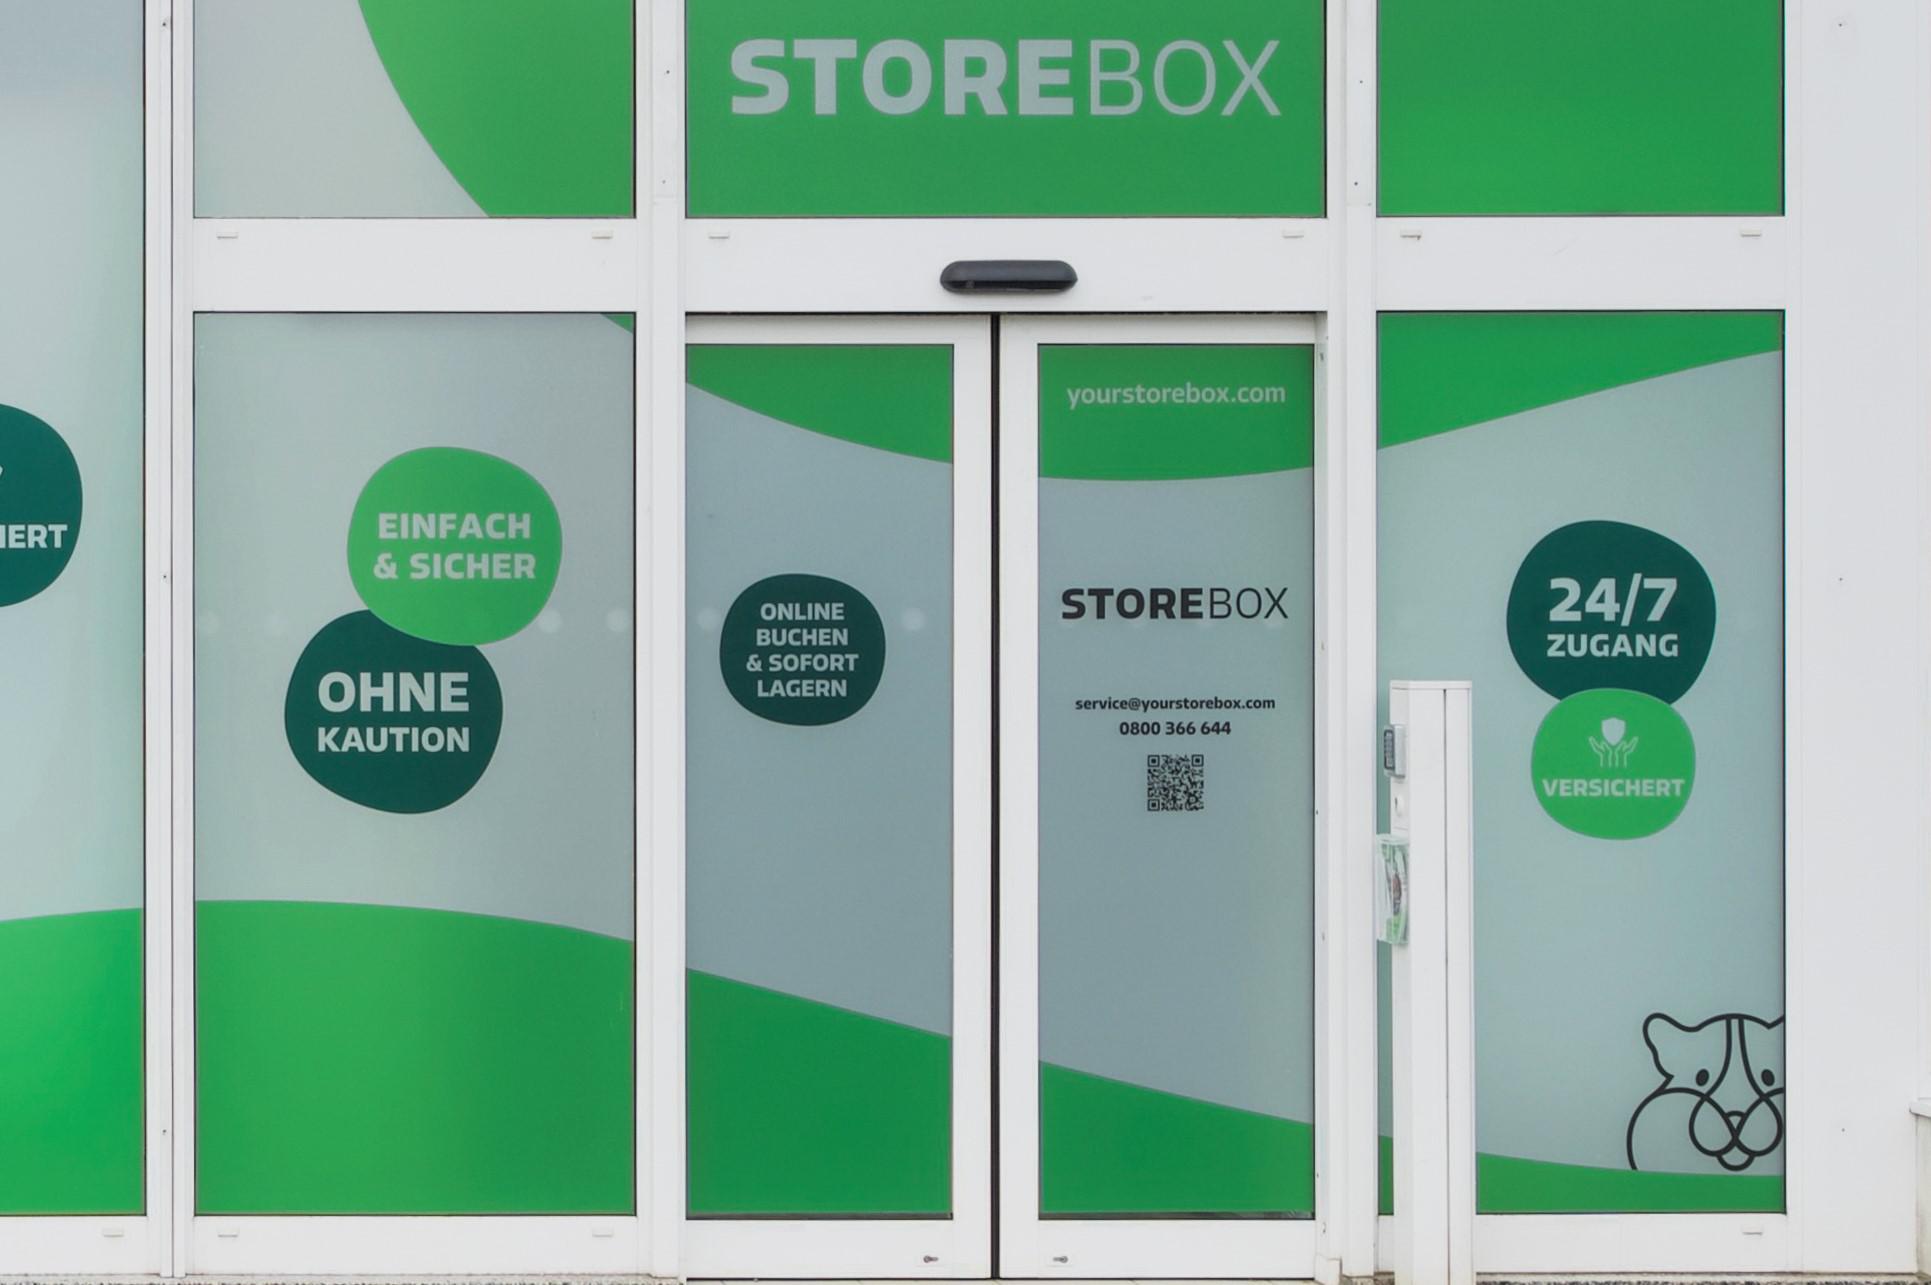 Storebox - Dein Lager nebenan, Godesberger Allee 6-8 in Bonn